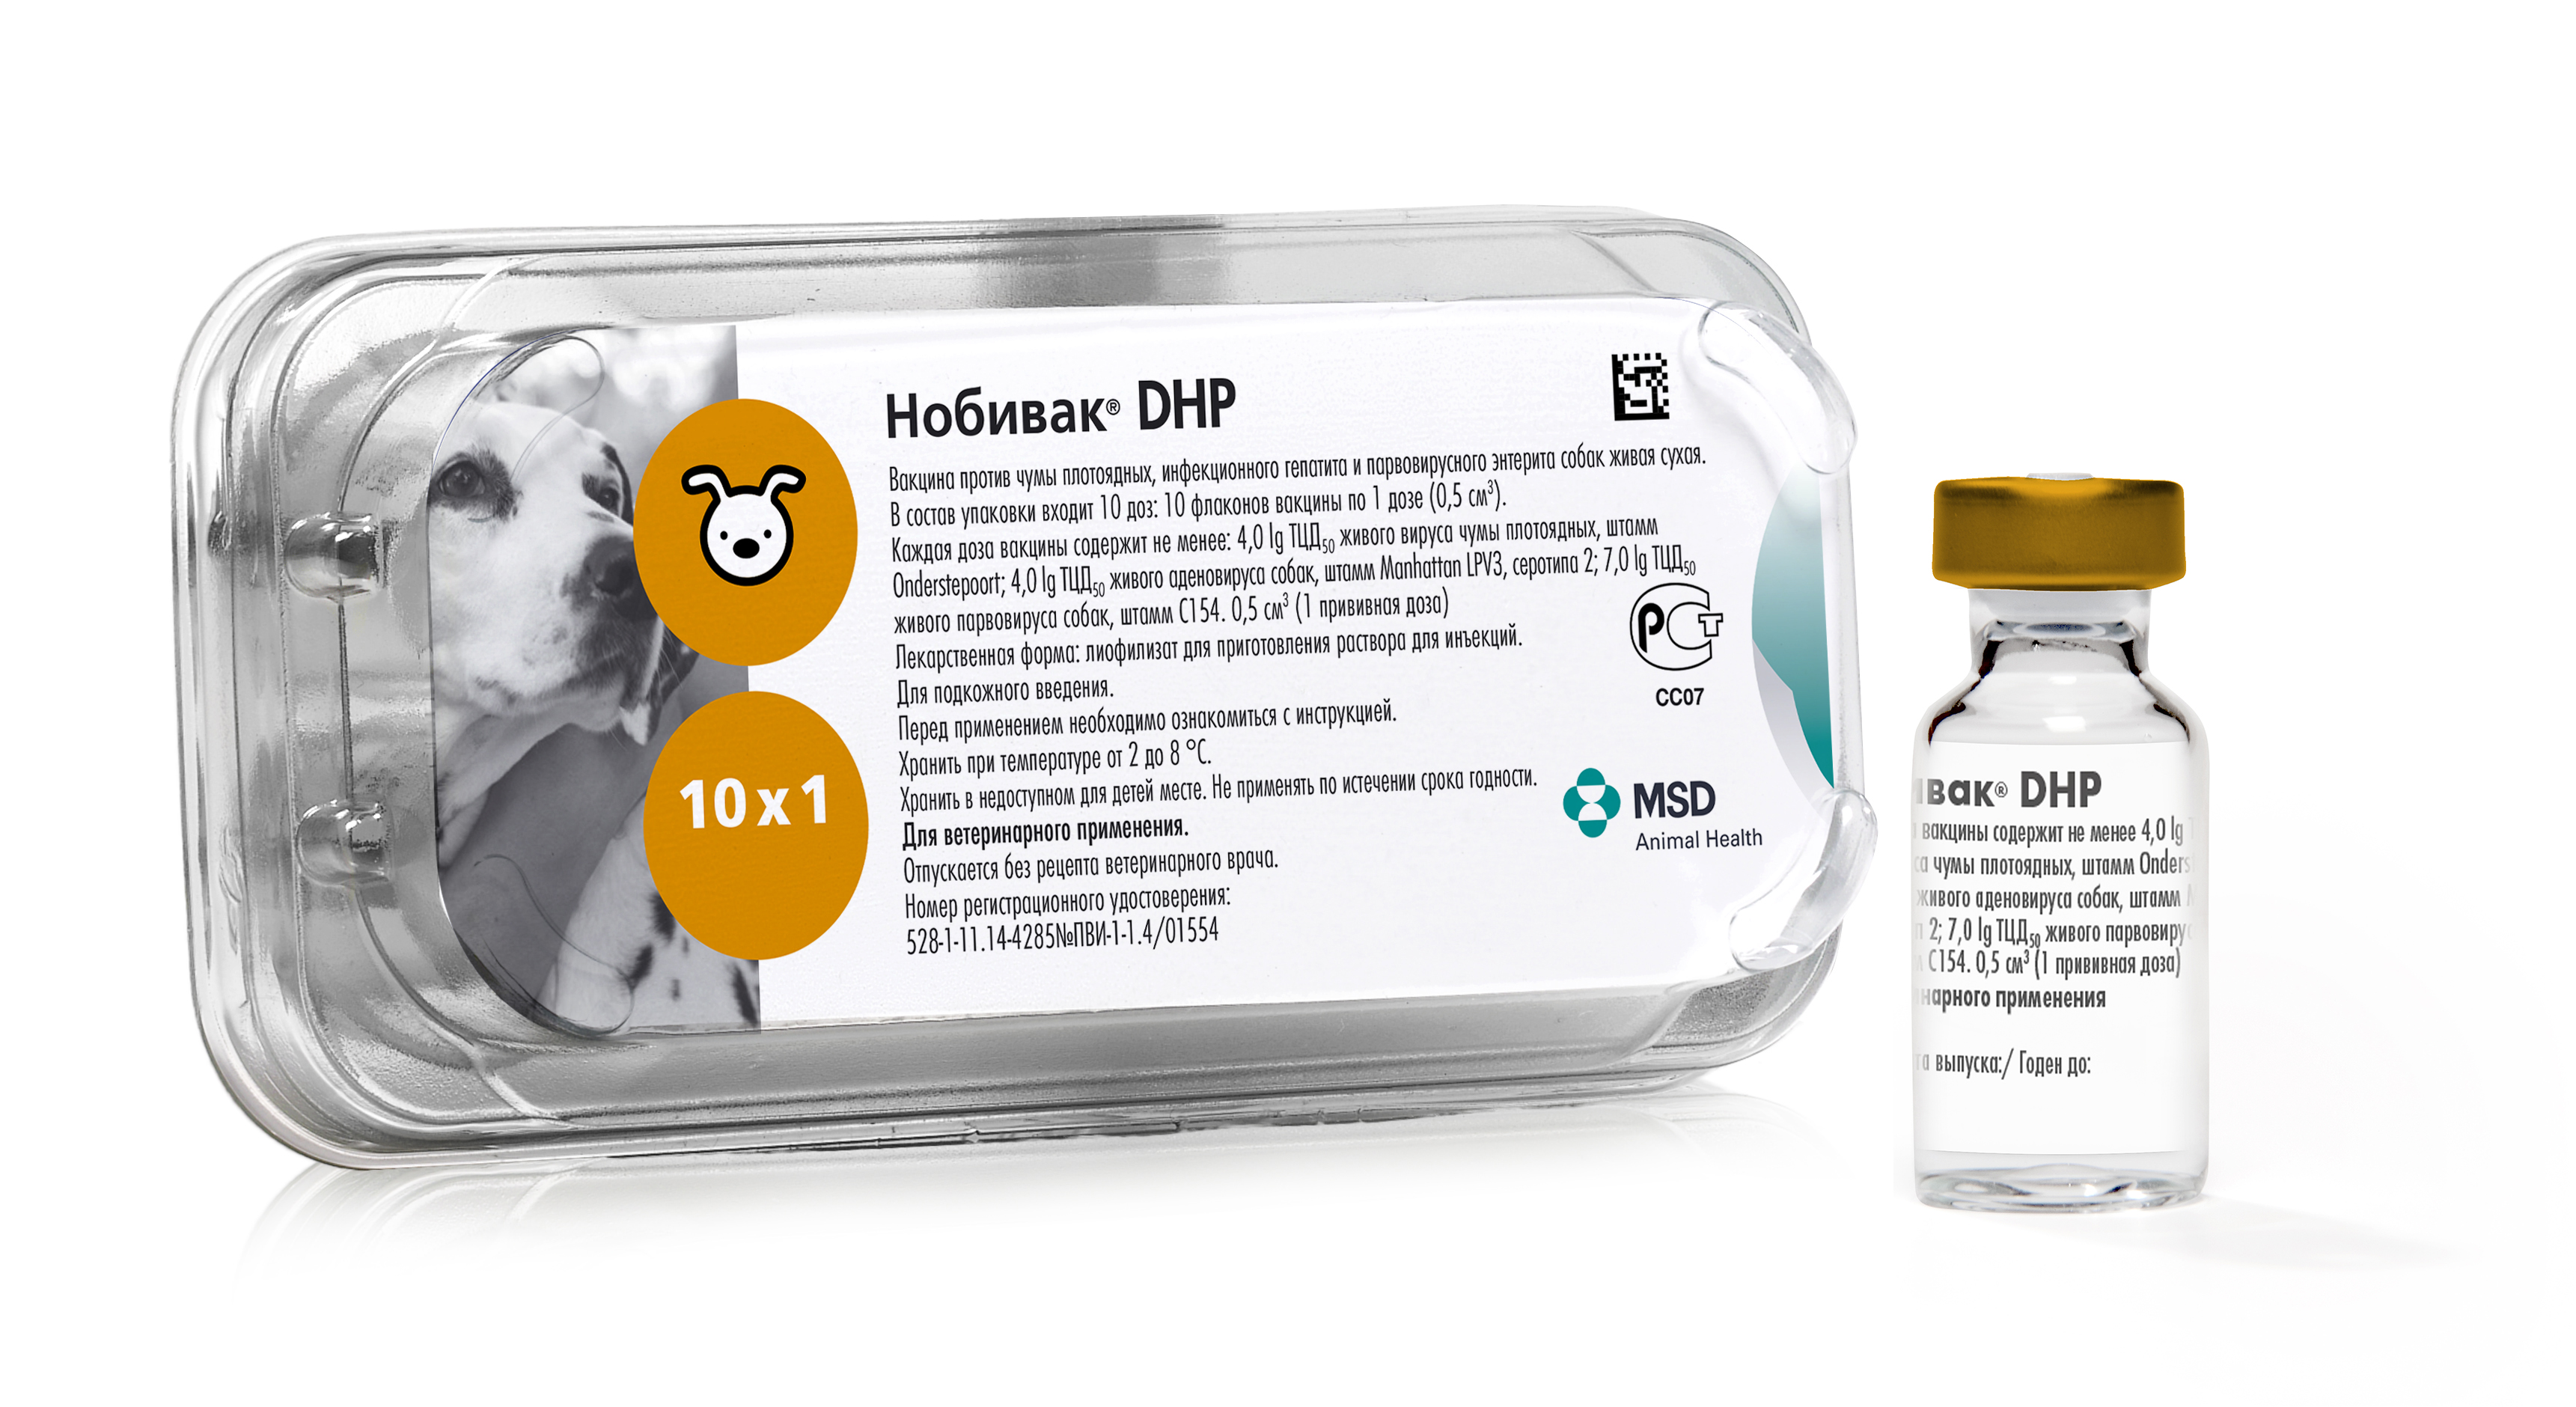 Нобивак® DHP (Nobivac® DHP) - MSD Animal Health Russia